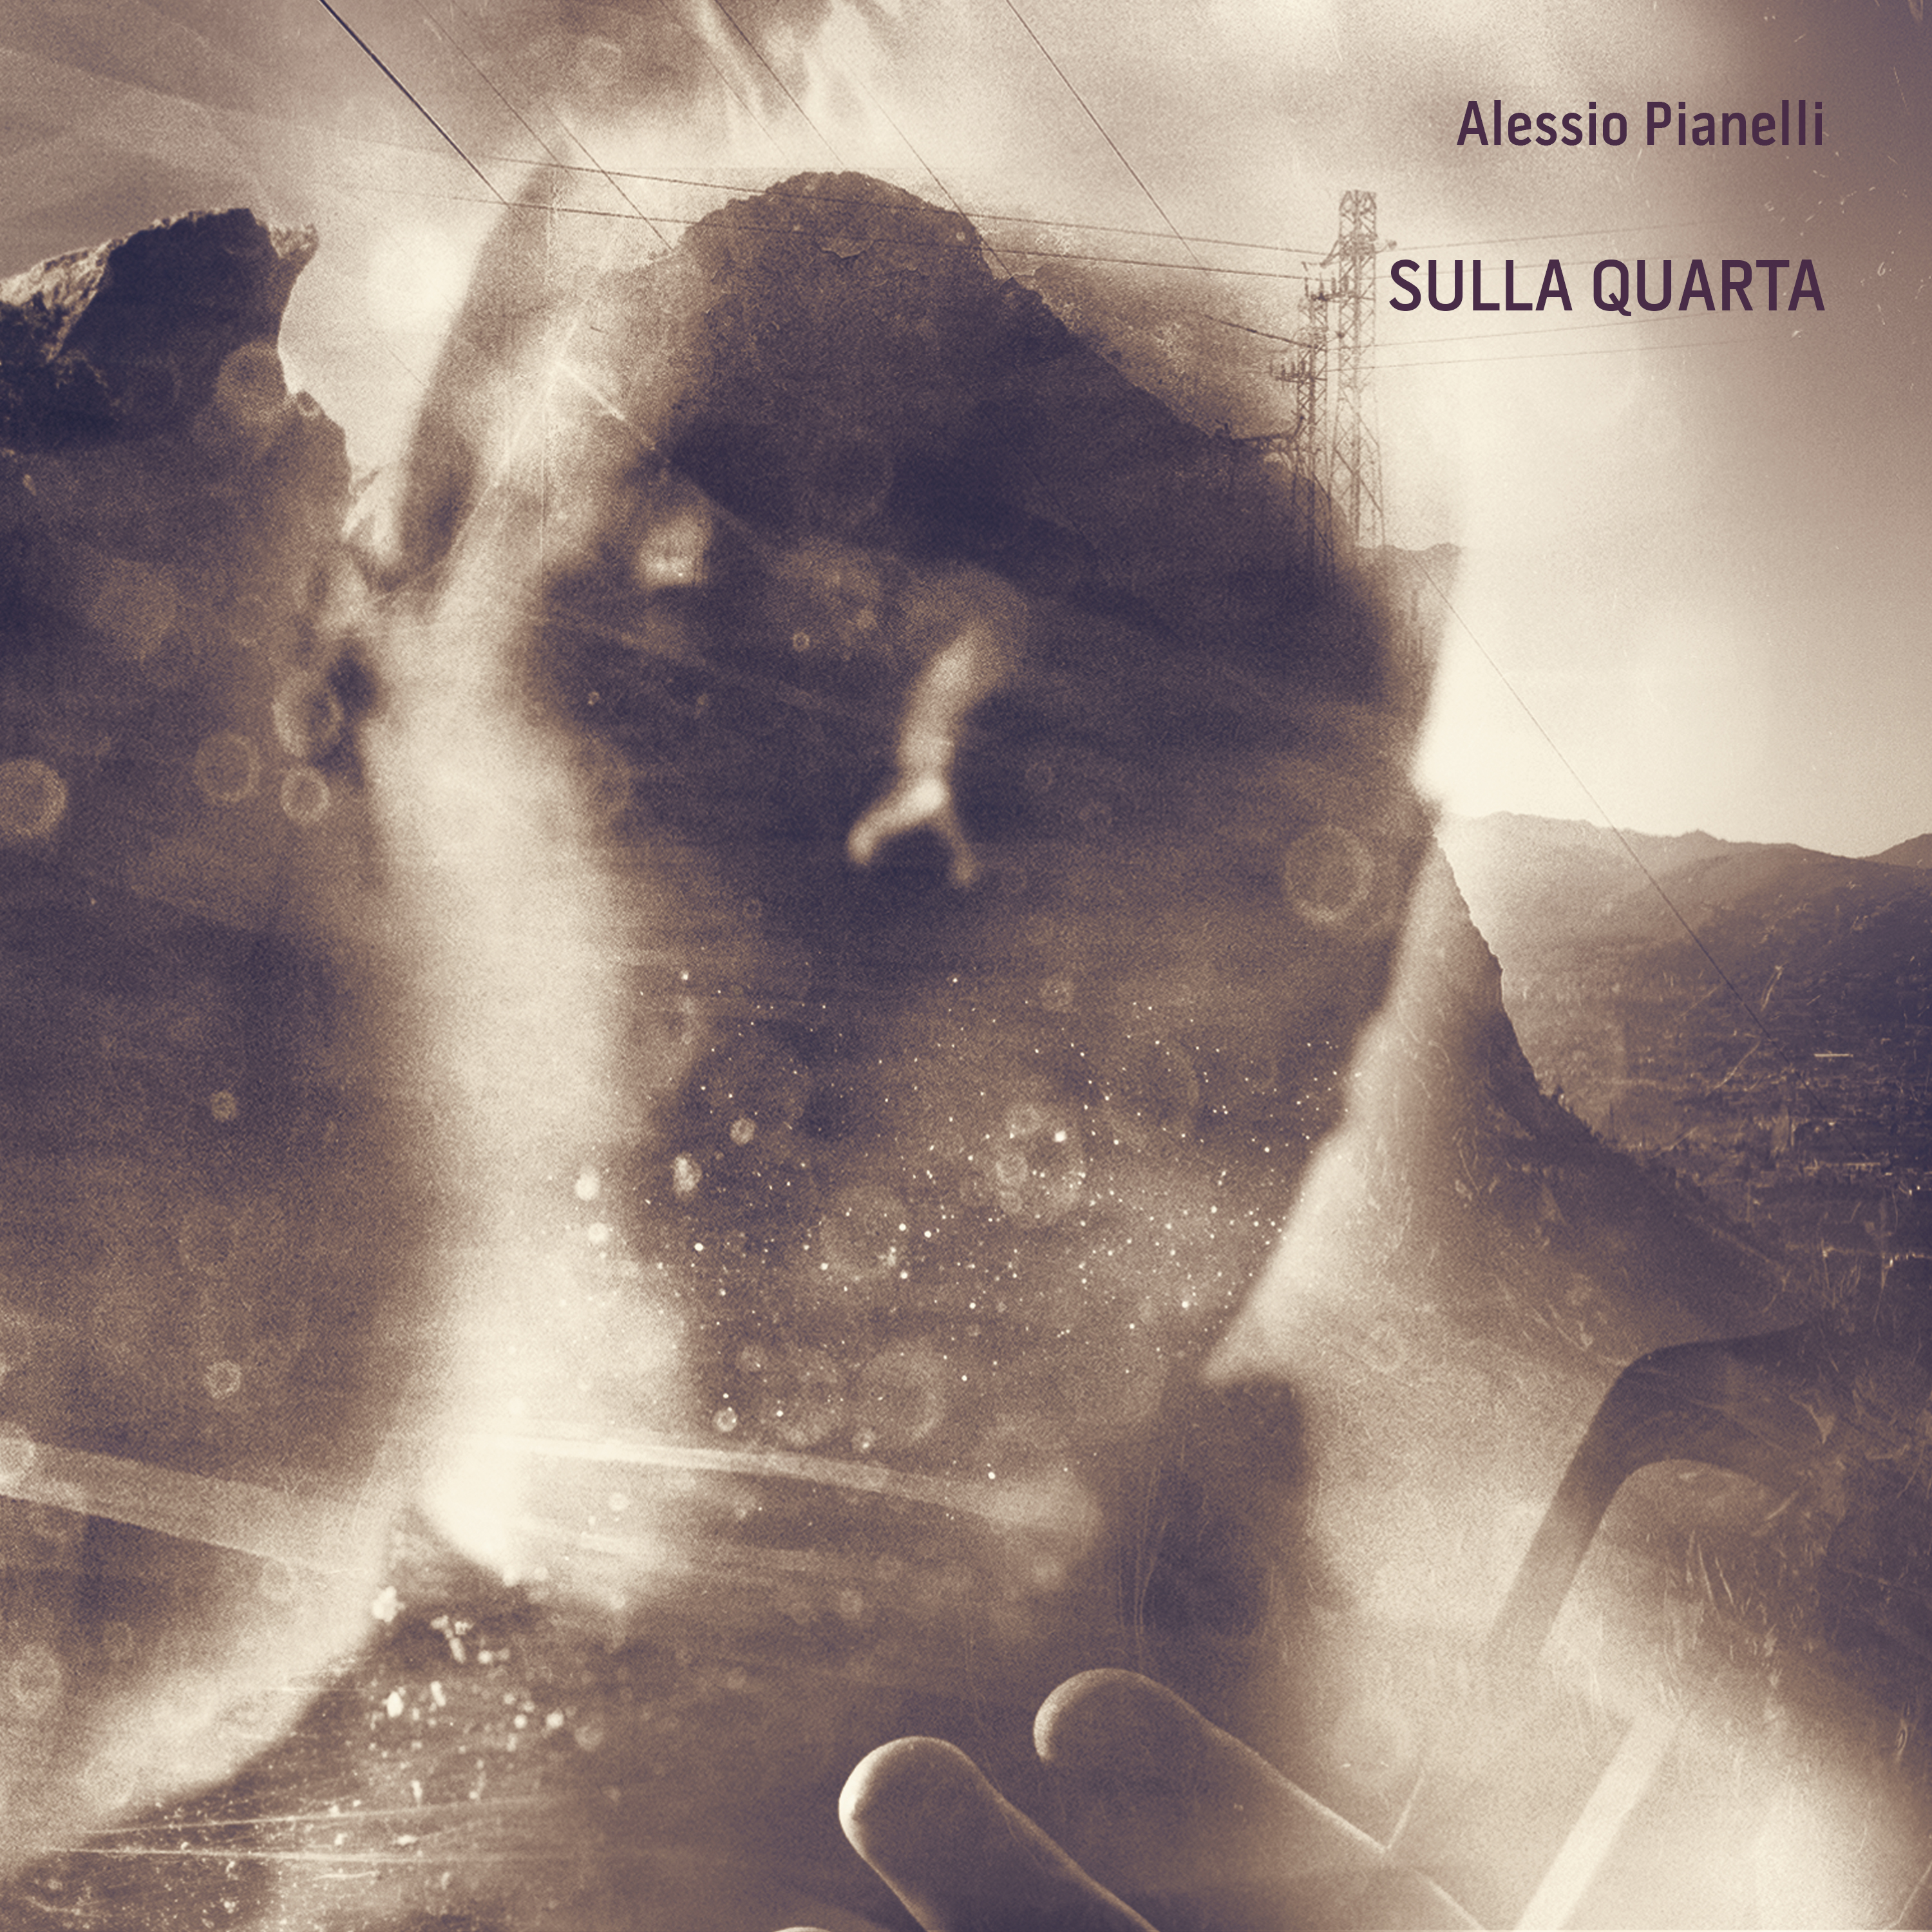 Alessio Pianelli, cello, Sulla Quarta, Almendra Music, new album, cover, cello, violoncello